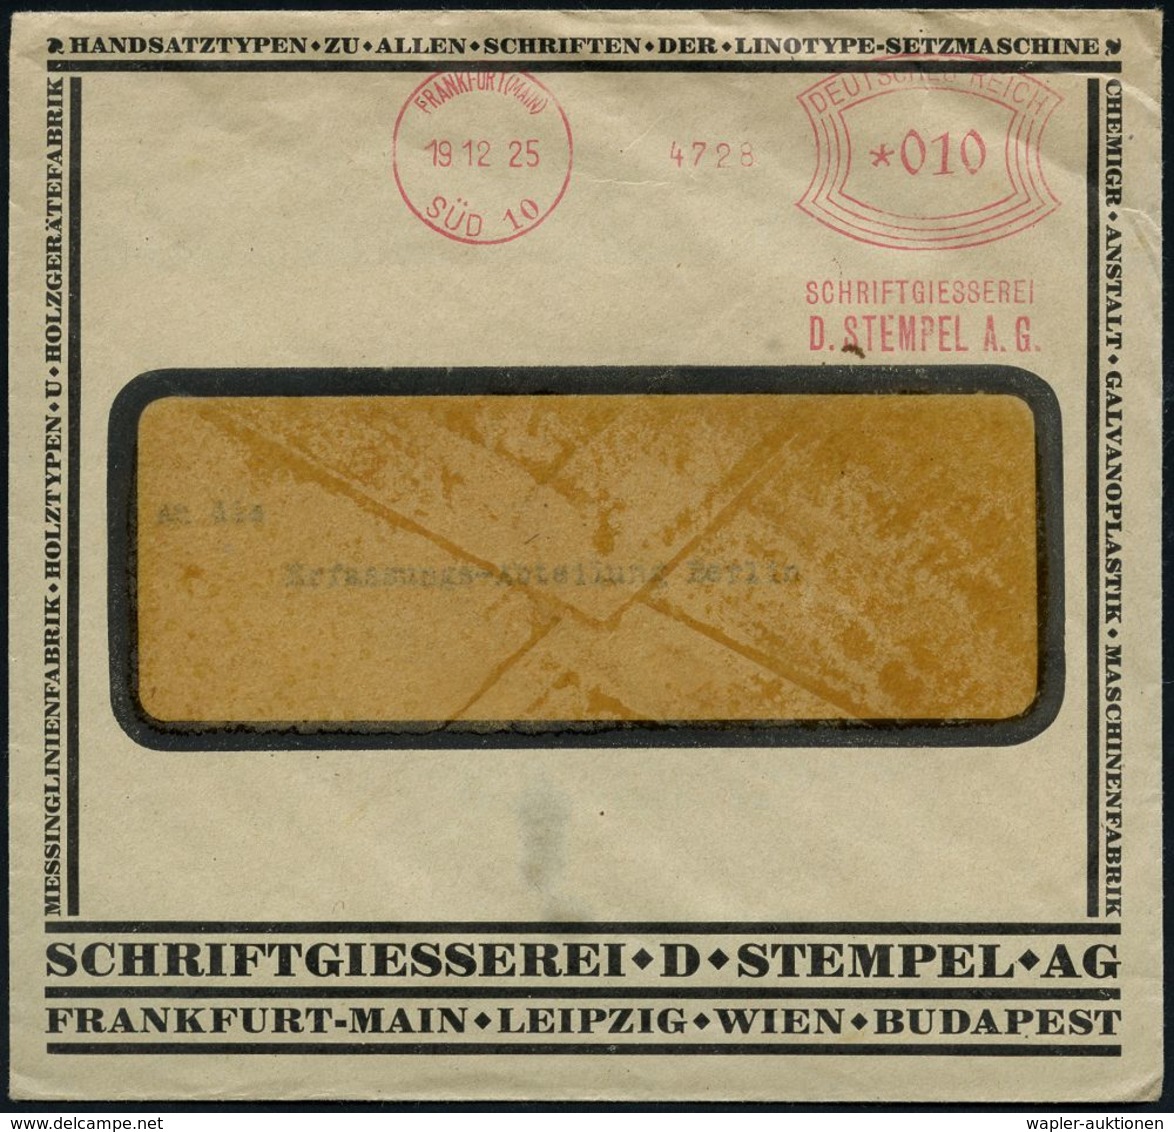 BÜRO / SCHREIBGERÄTE / SCHREIBMASCHINE : FRANKFURT (MAIN)/ SÜD 10/ SCHRIFTGIESSEREI/ D.STEMPEL AG 1925 (19.12.) Sehr Frü - Unclassified